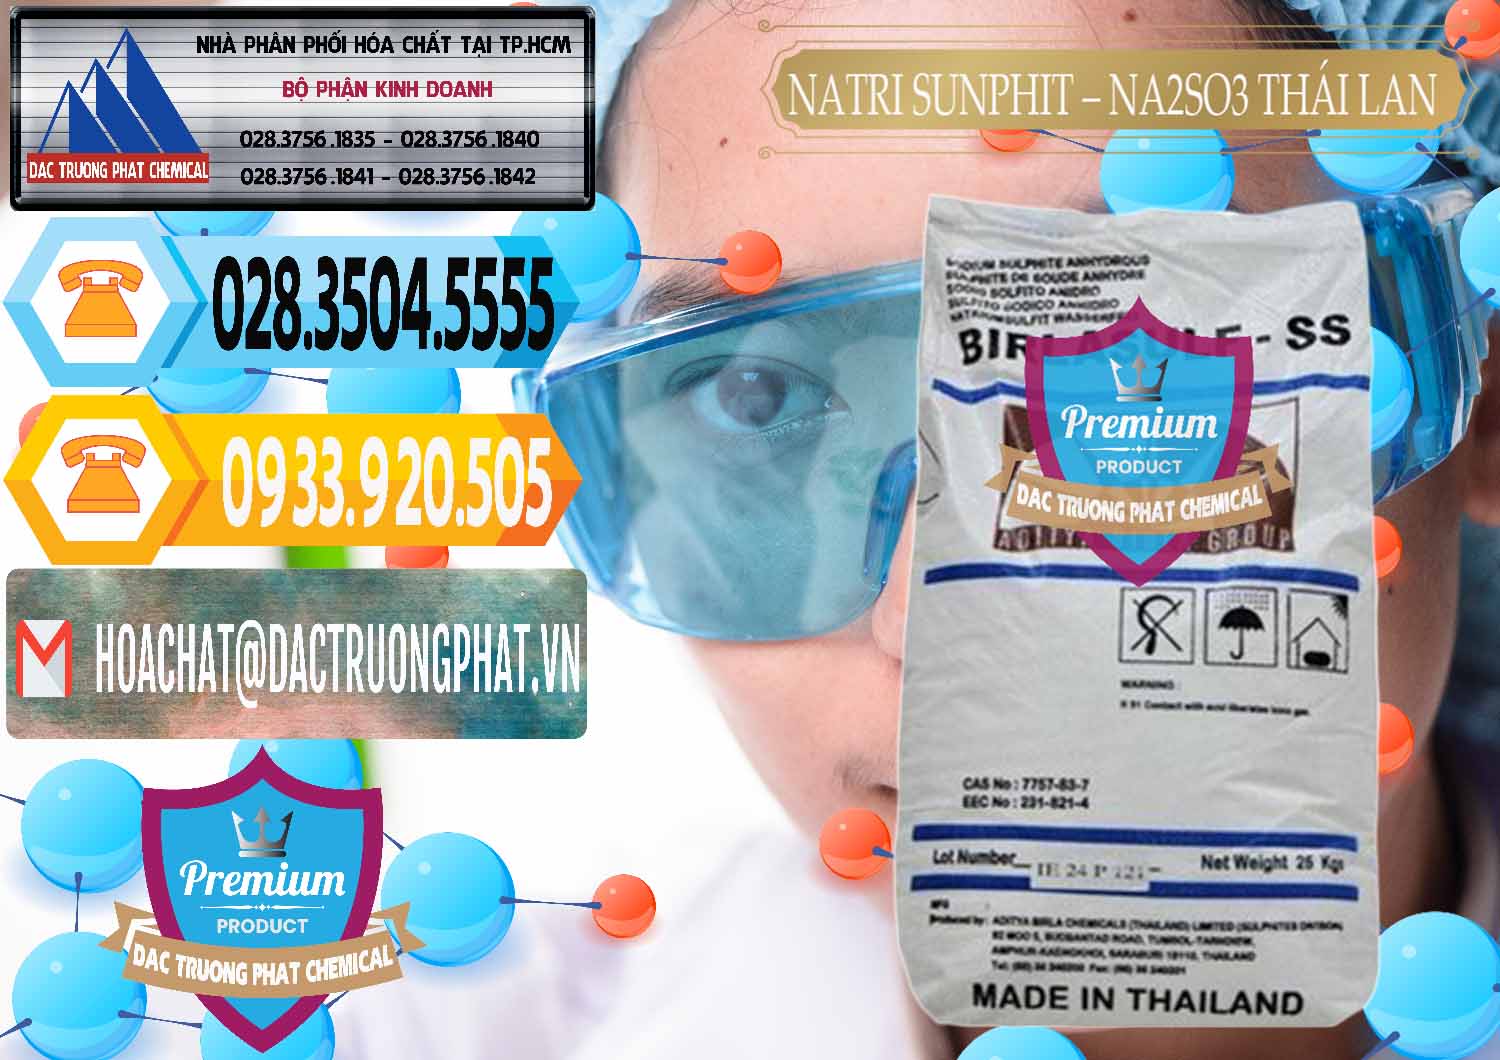 Đơn vị bán _ phân phối Natri Sunphit - NA2SO3 Thái Lan - 0105 - Chuyên phân phối ( cung ứng ) hóa chất tại TP.HCM - hoachattayrua.net